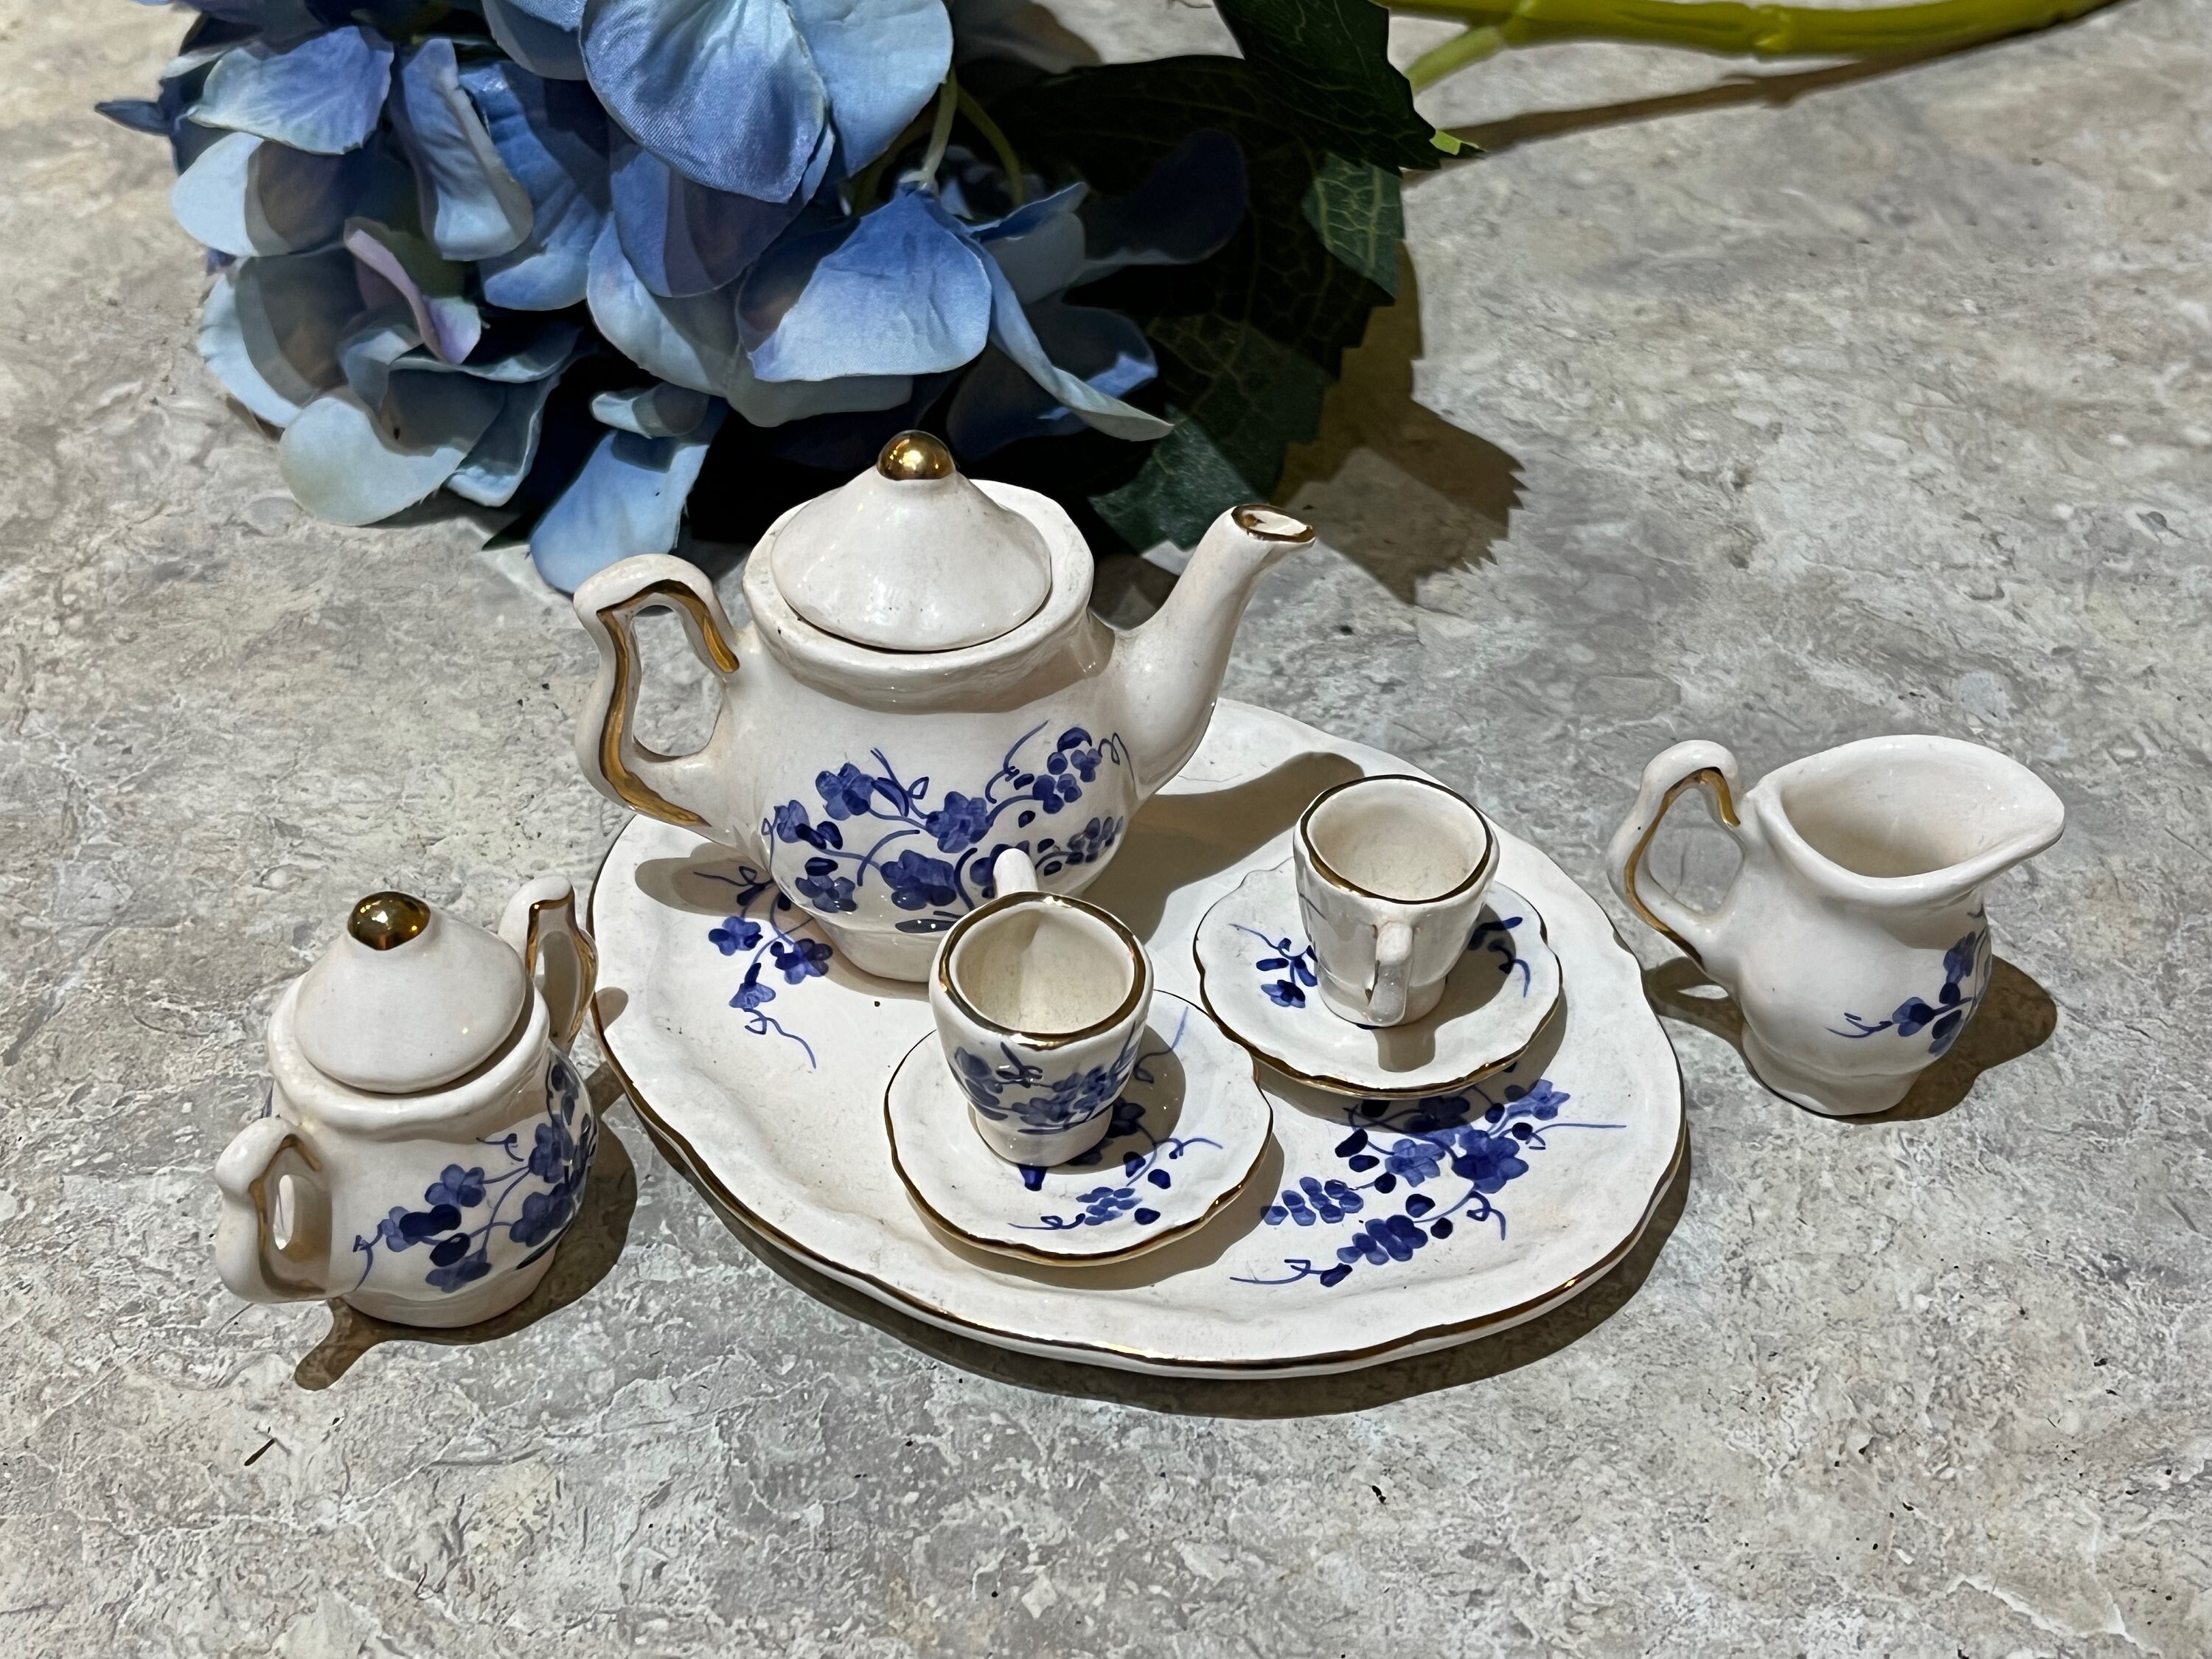 Hibiscus Tea Resin Necklace, Real Tea Leaves, Preserved Tea, Tea